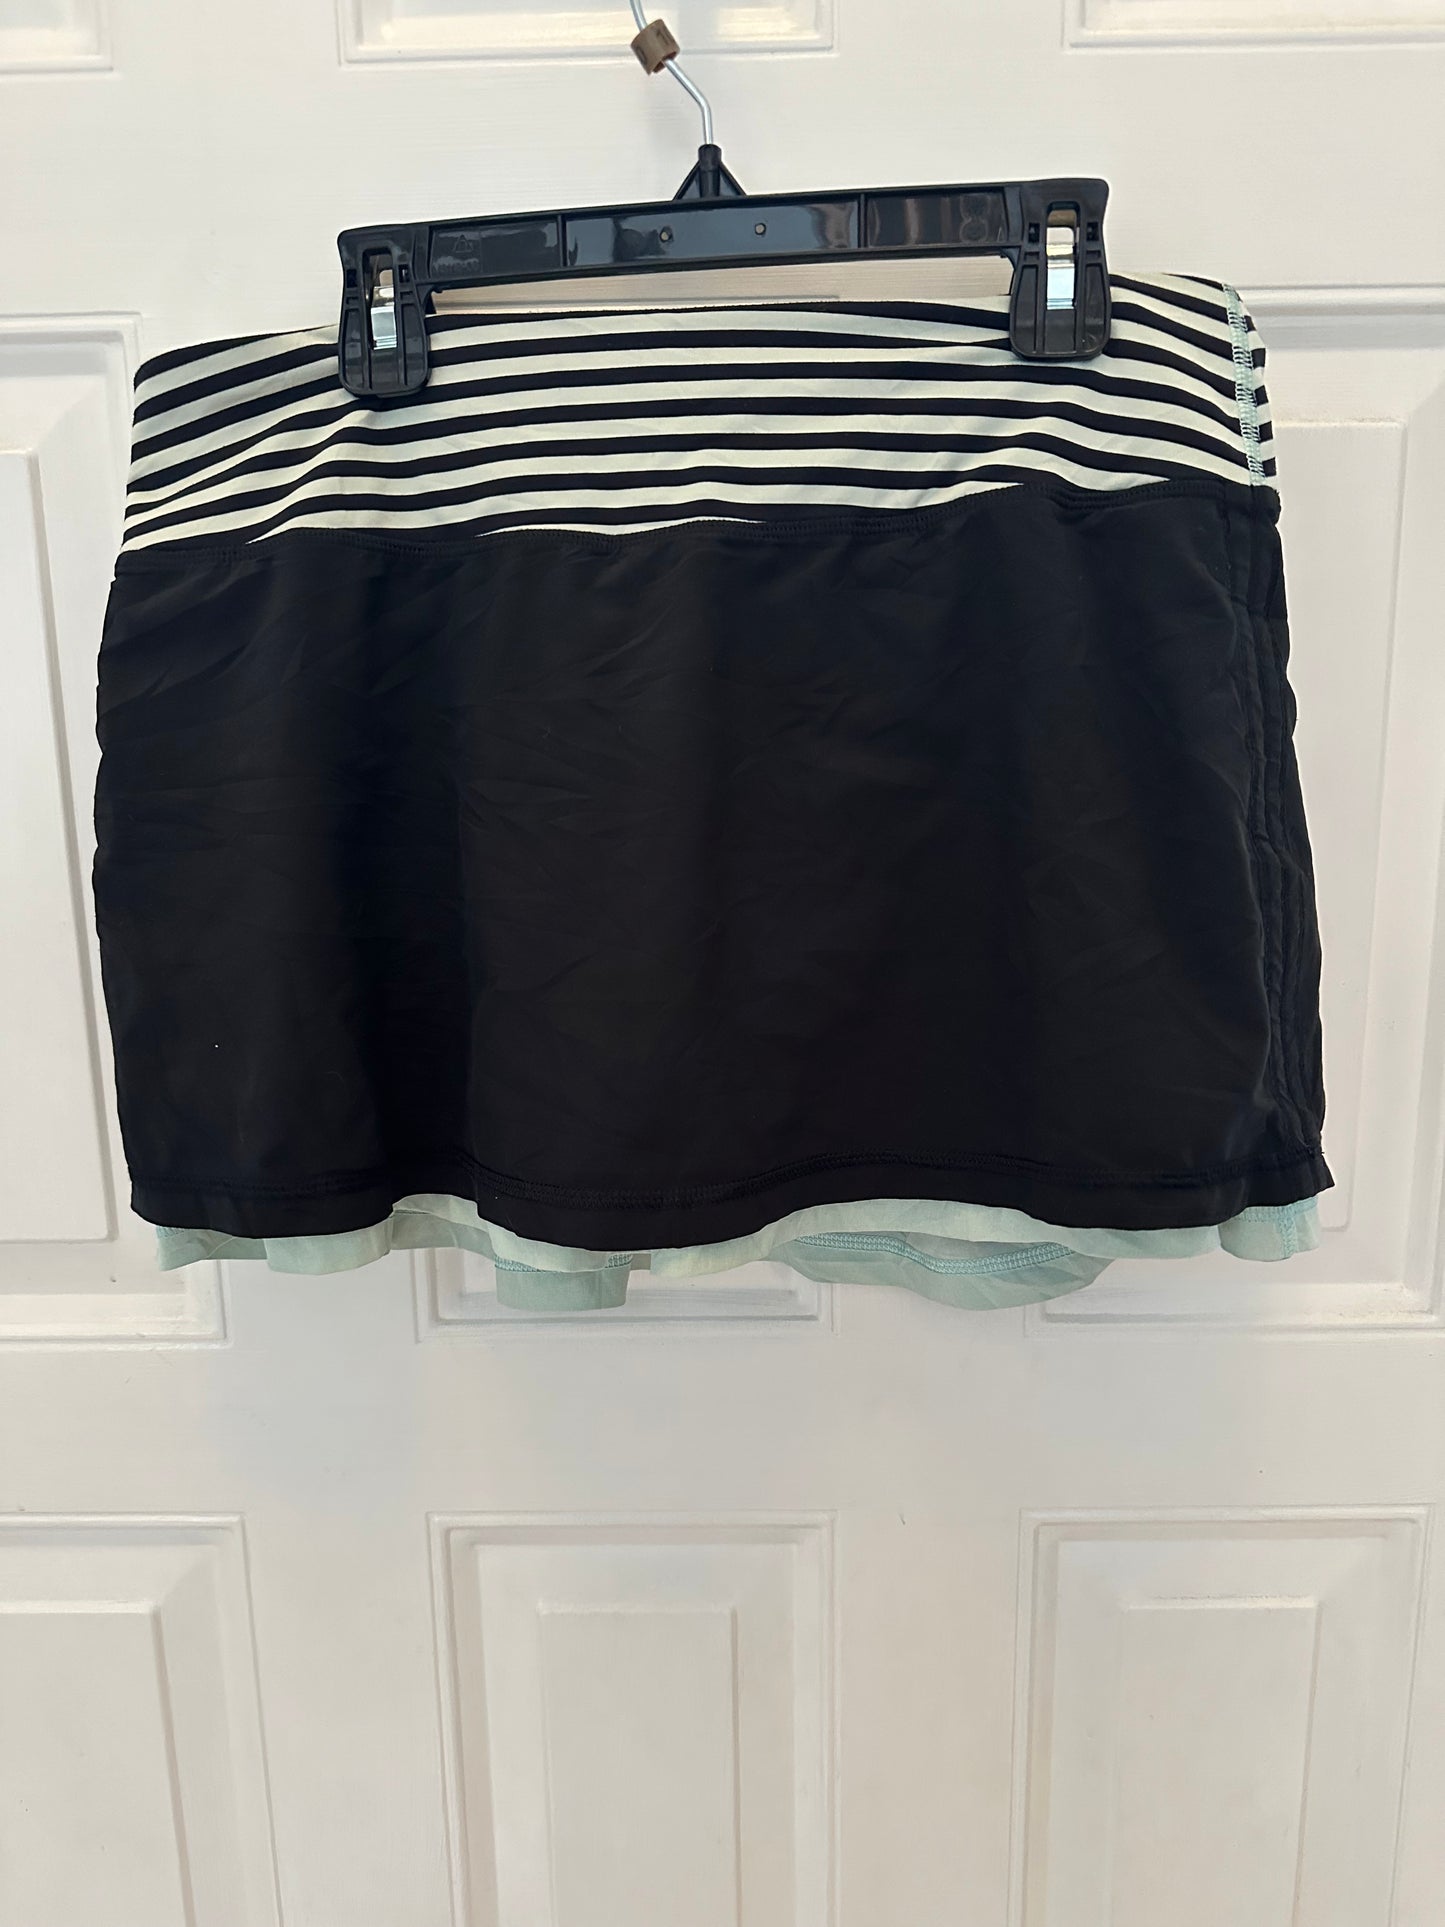 Lululemon Women’s Skirt Black Sz 6 Striped